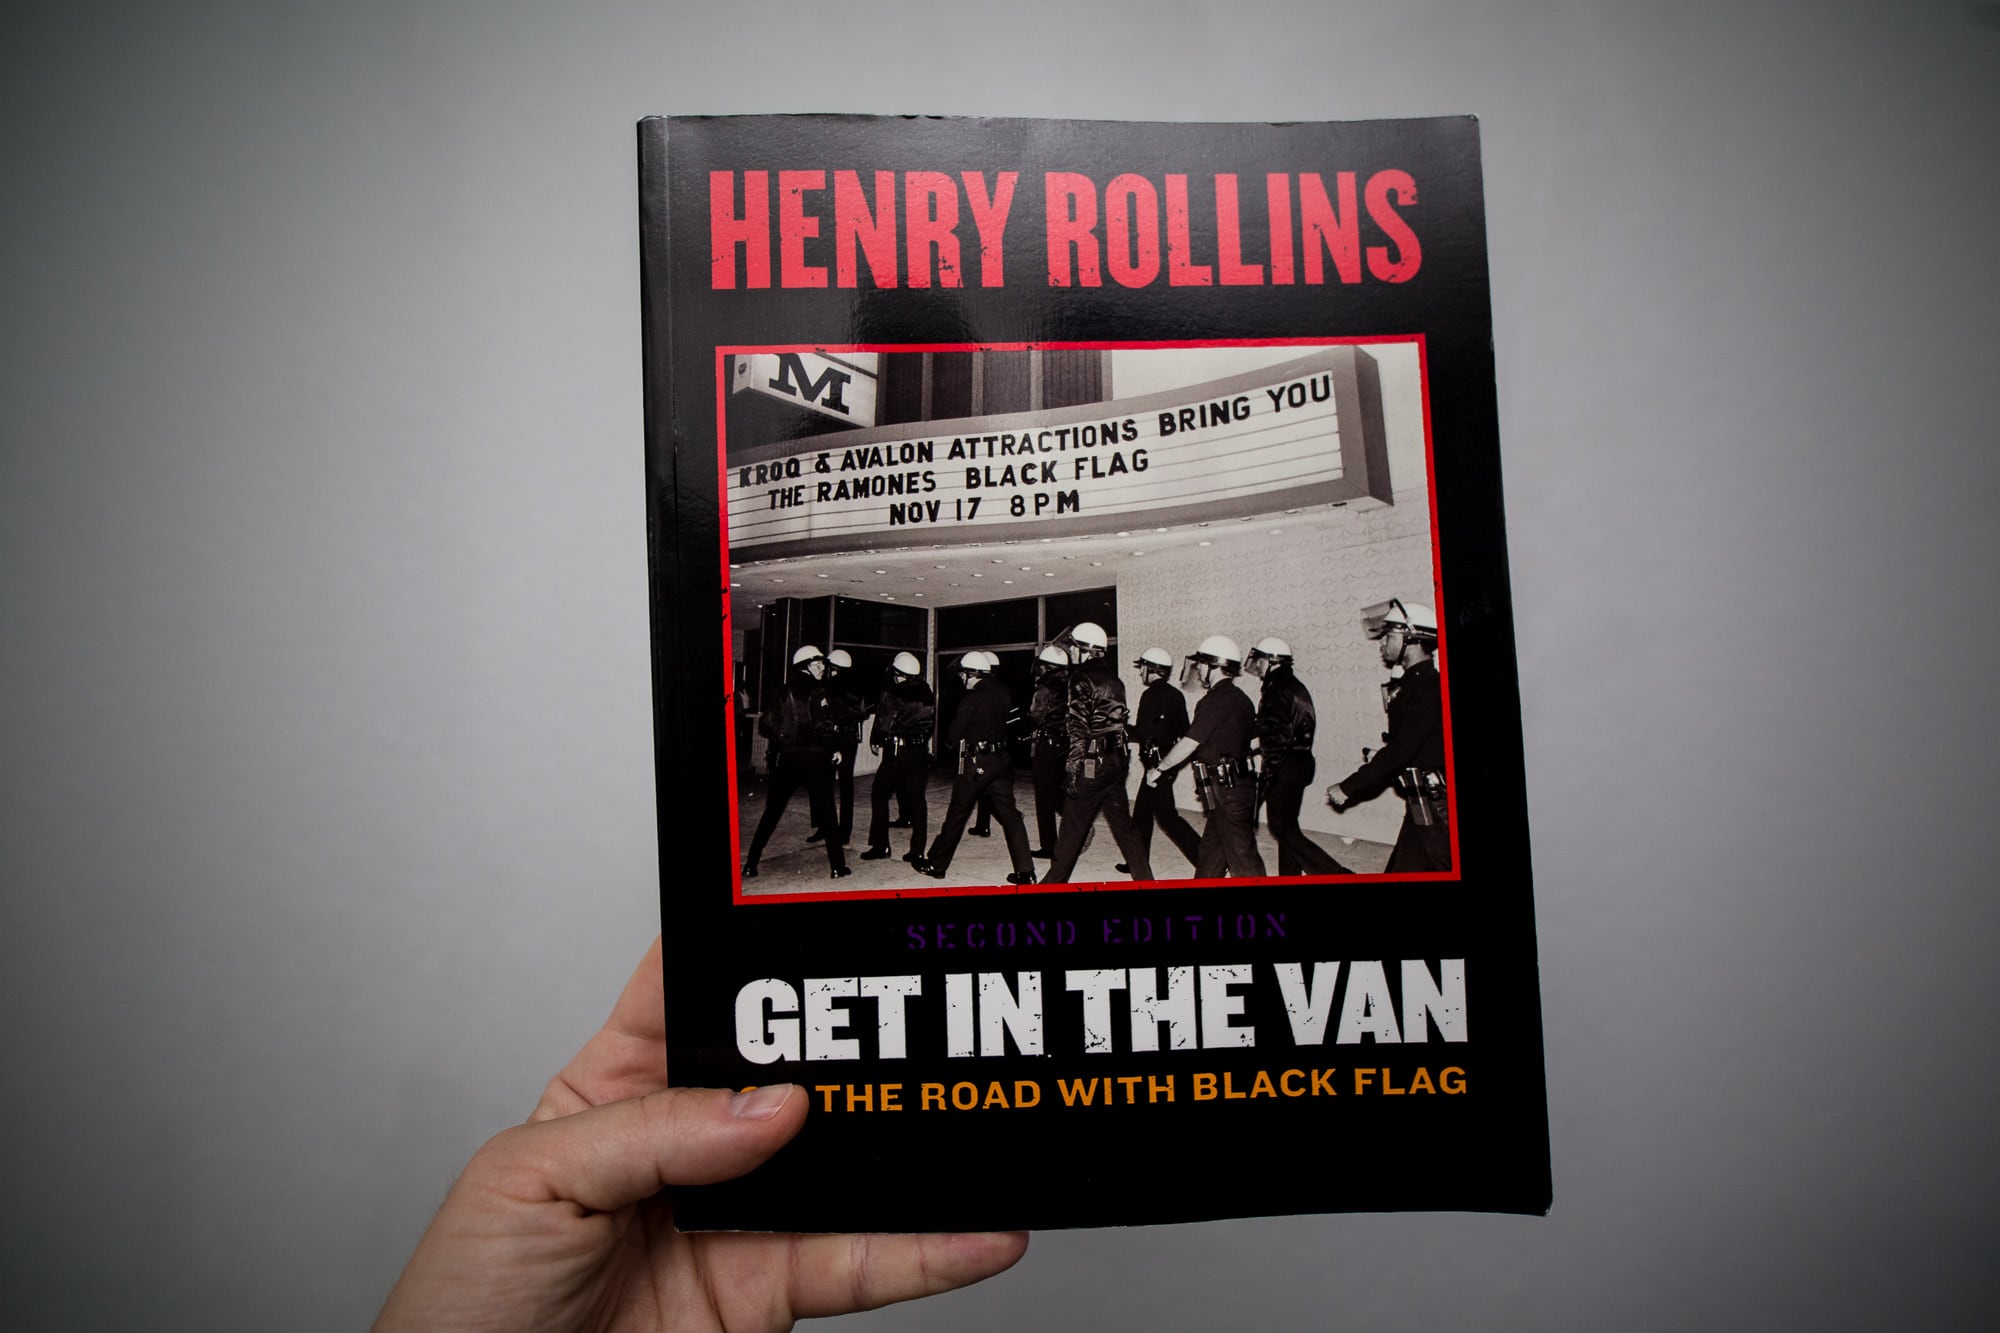 Henry Rollins - "Get In The Van"